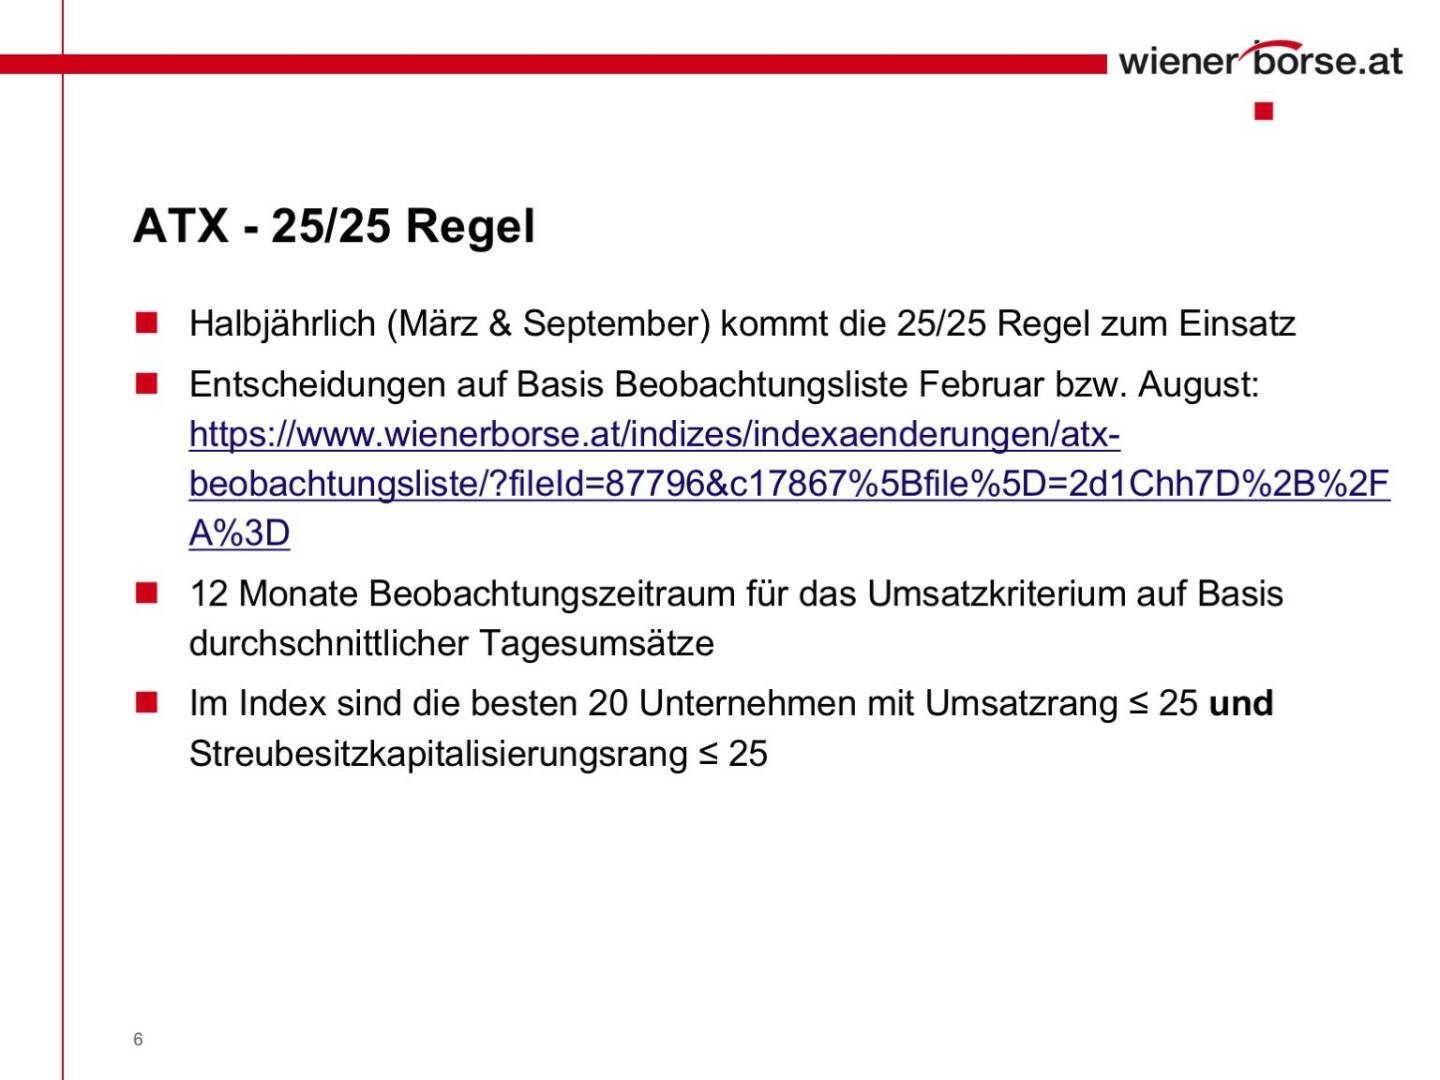 Wiener Börse - ATX 25/25 Regel